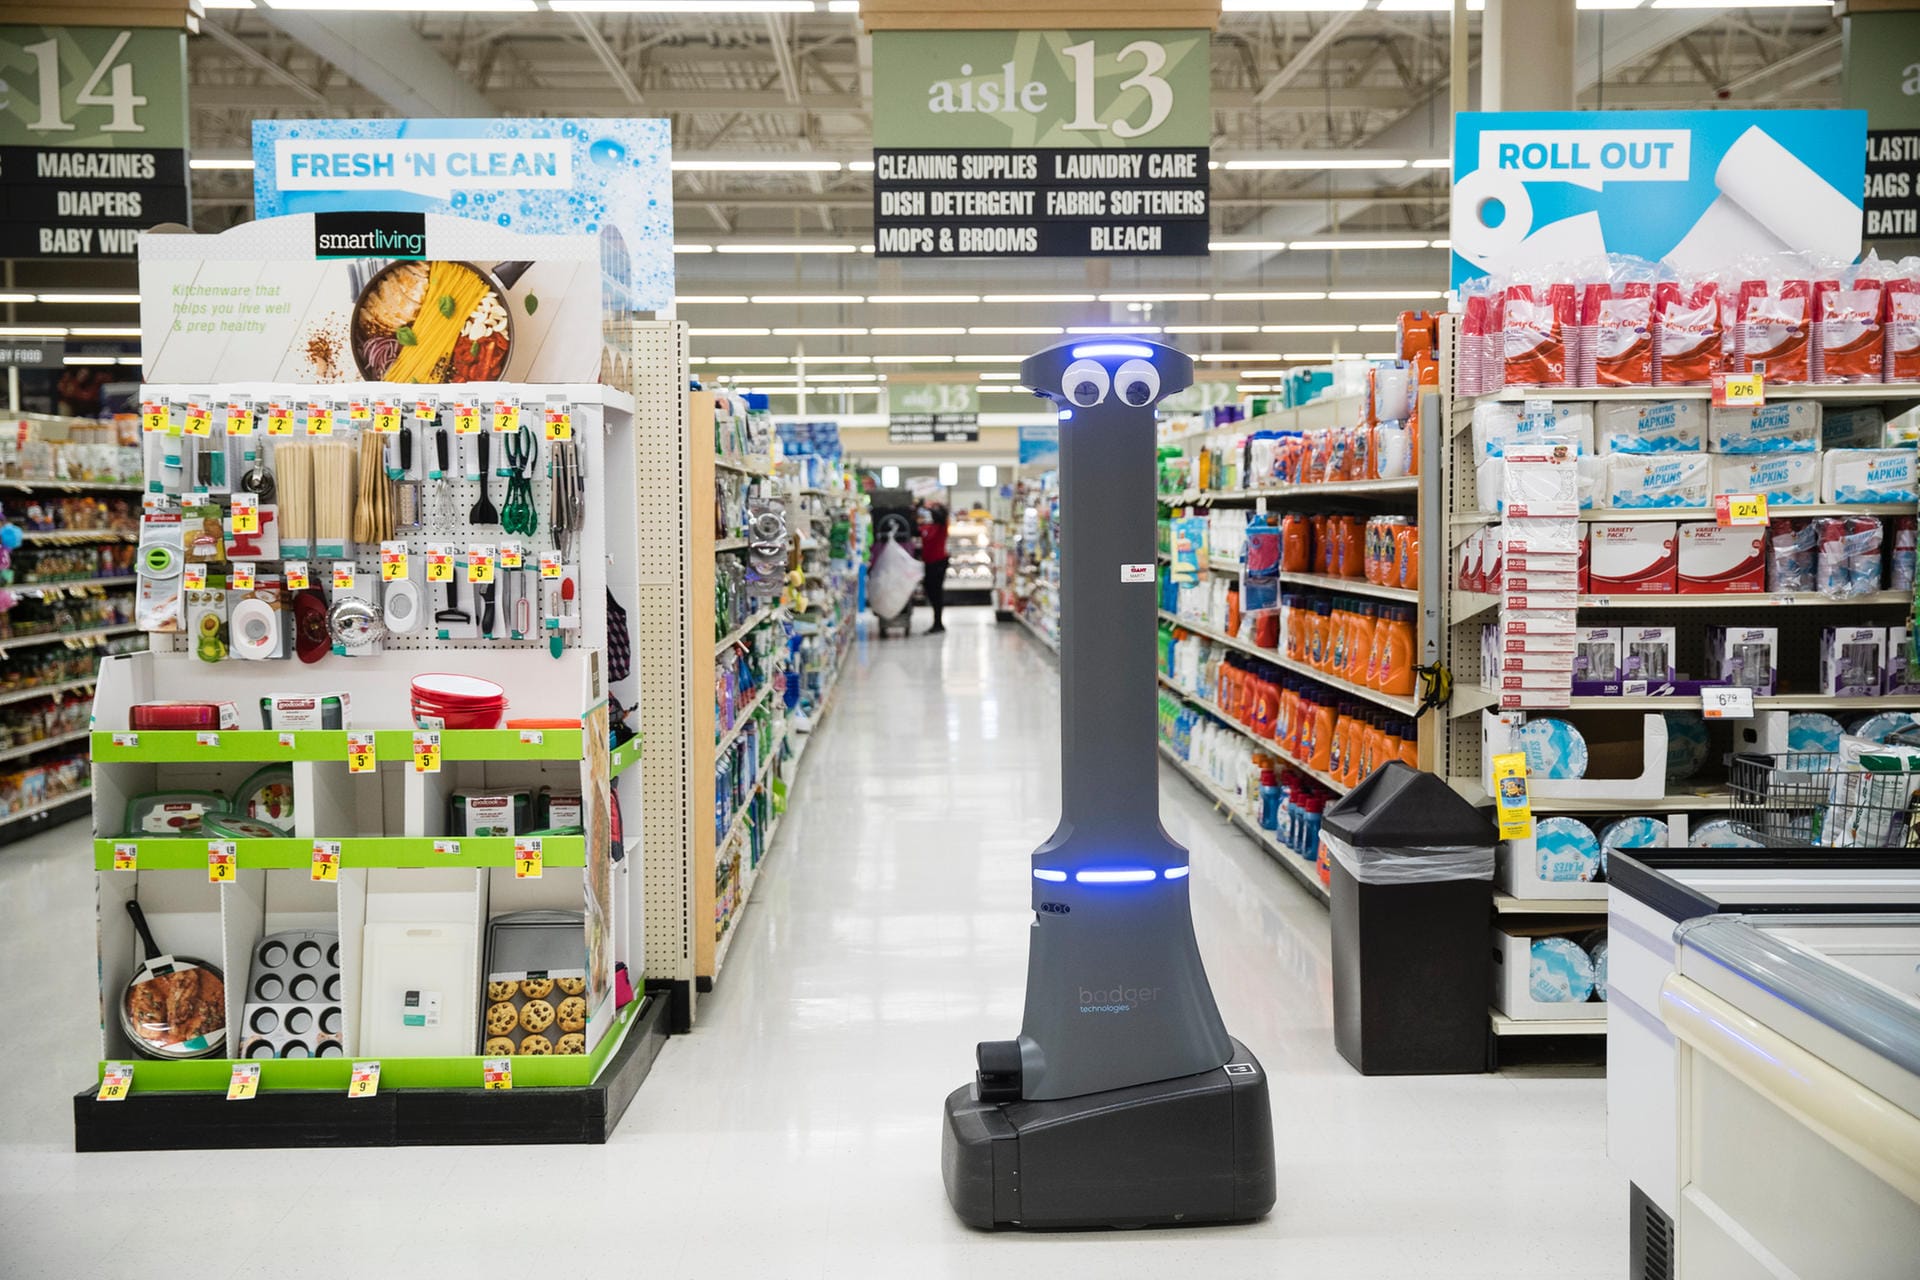 Der Roboter "Marty" soll im Supermarkt zum Einsatz kommen. Dort soll er eigenständig den Boden wischen und überprüfen, ob Regale wieder befüllt werden müssen.